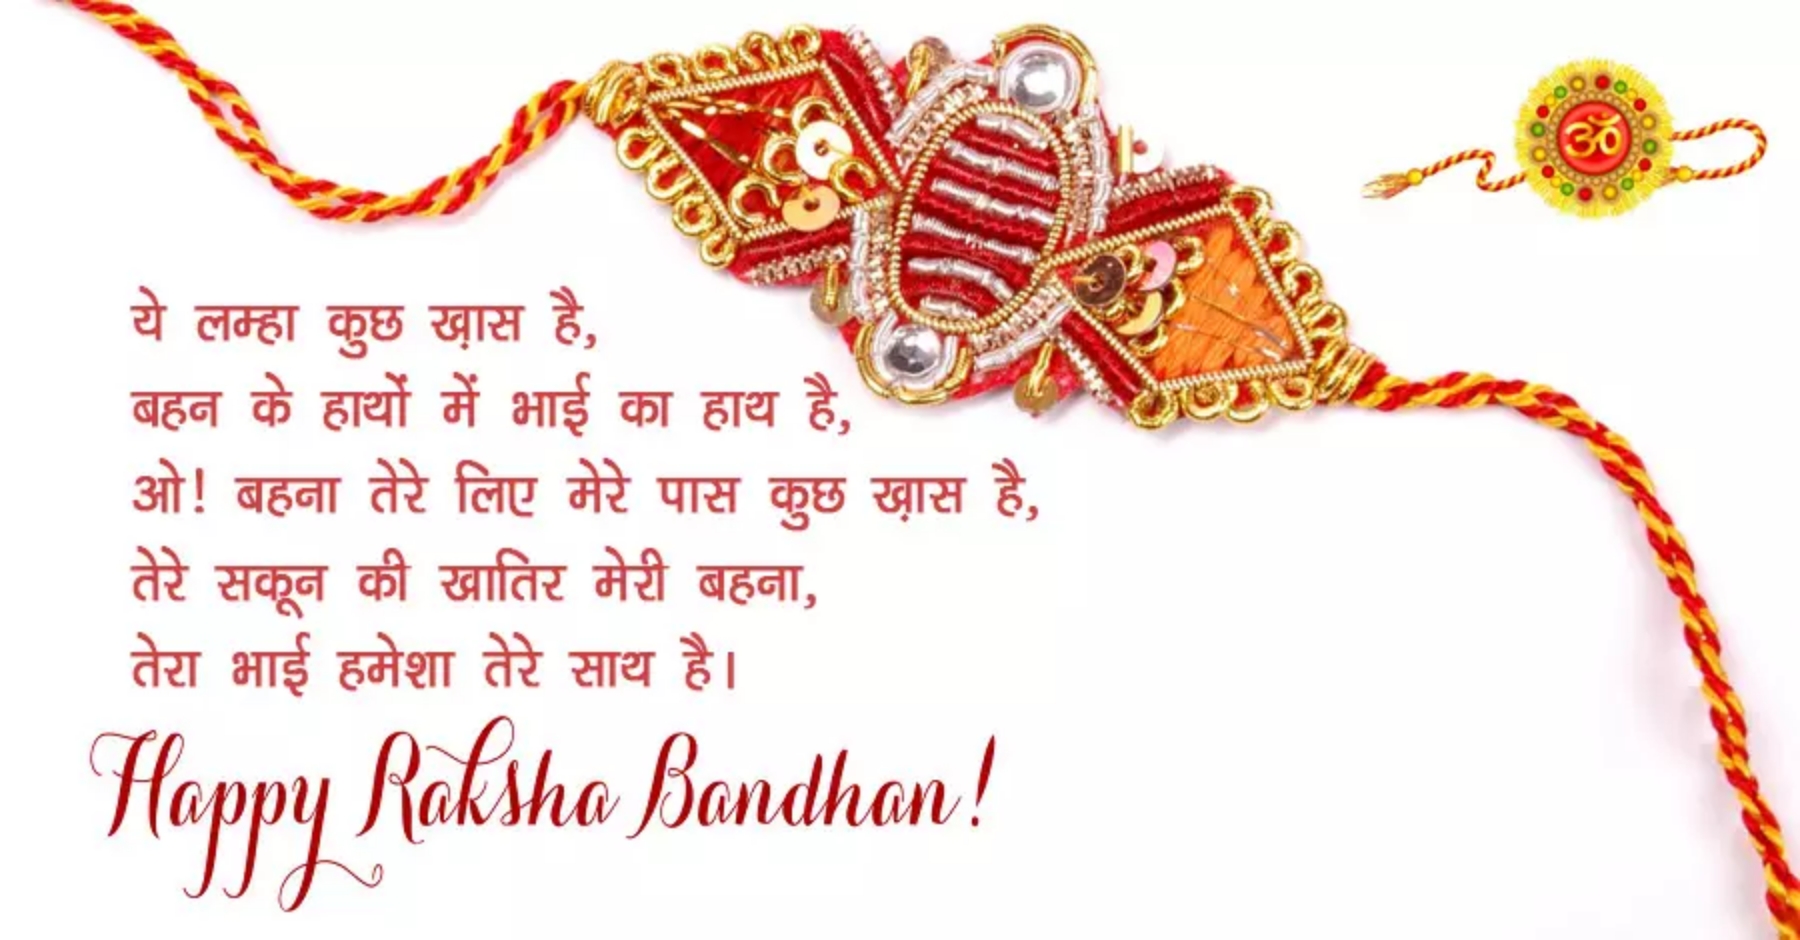 Raksha Bandhan Quotes In Hindi pic 2020